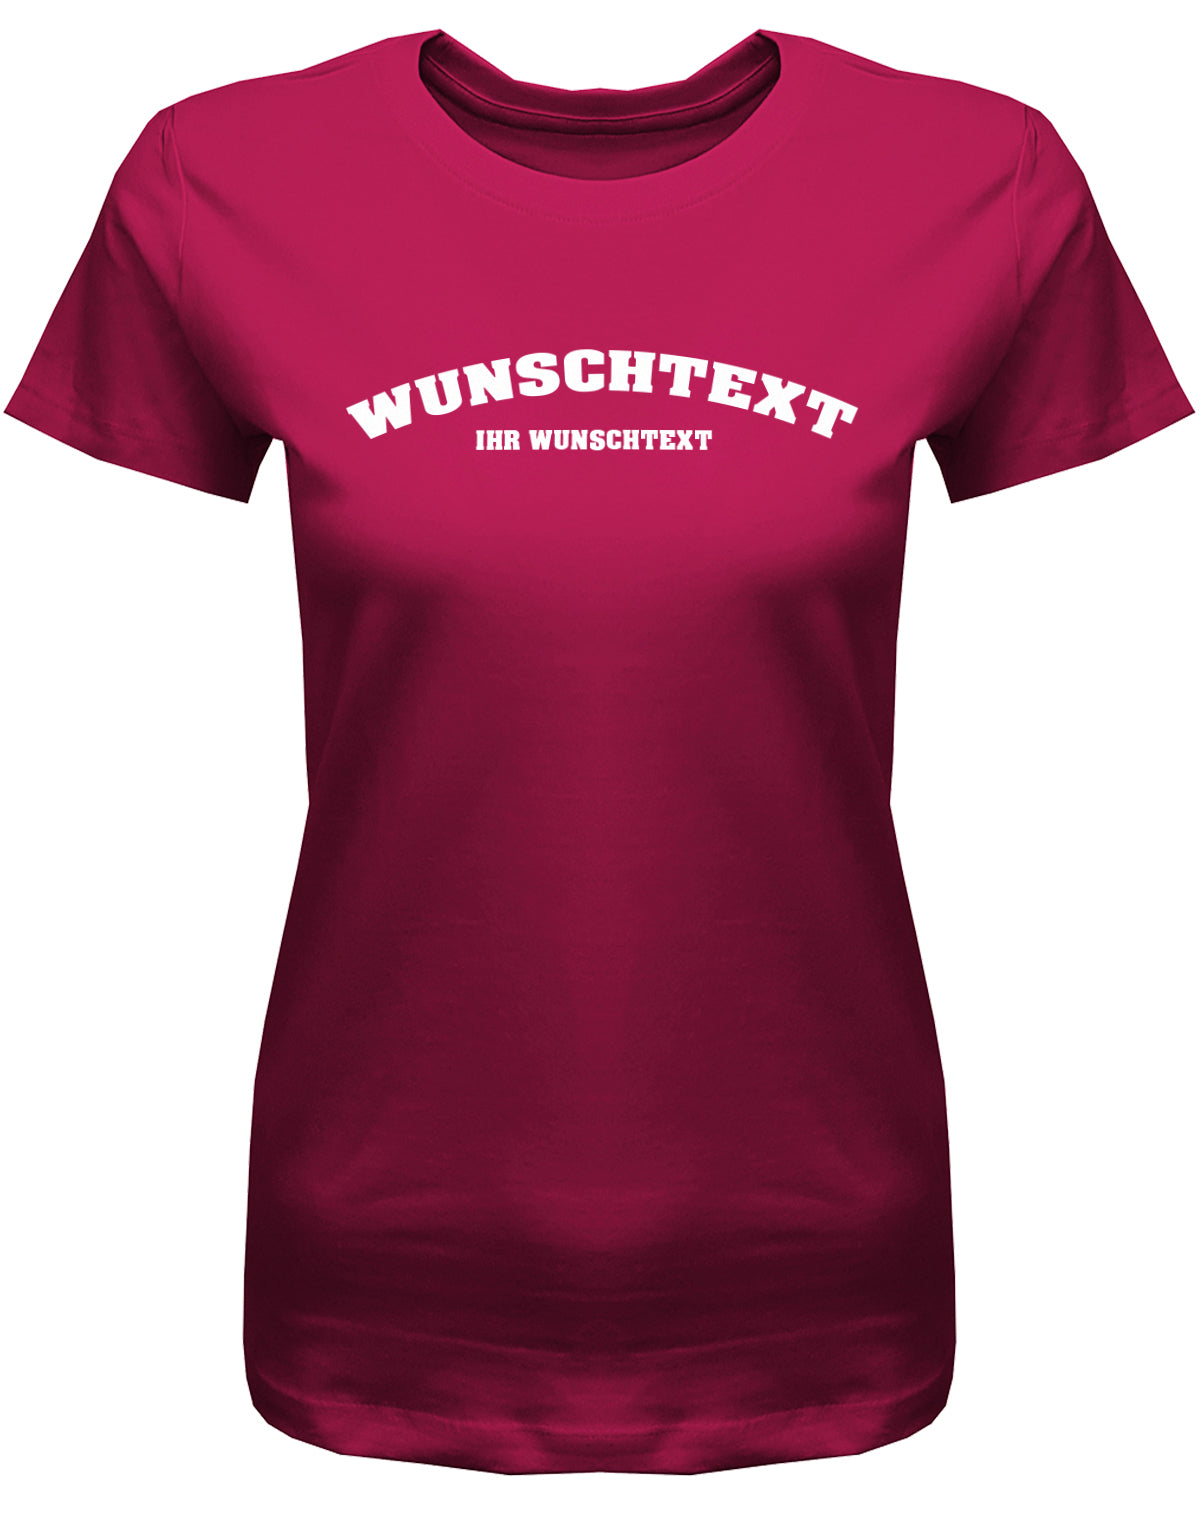 Frauen Tshirt mit Wunschtext.  Abgerundeter Text im Collage-Style. Sorbet